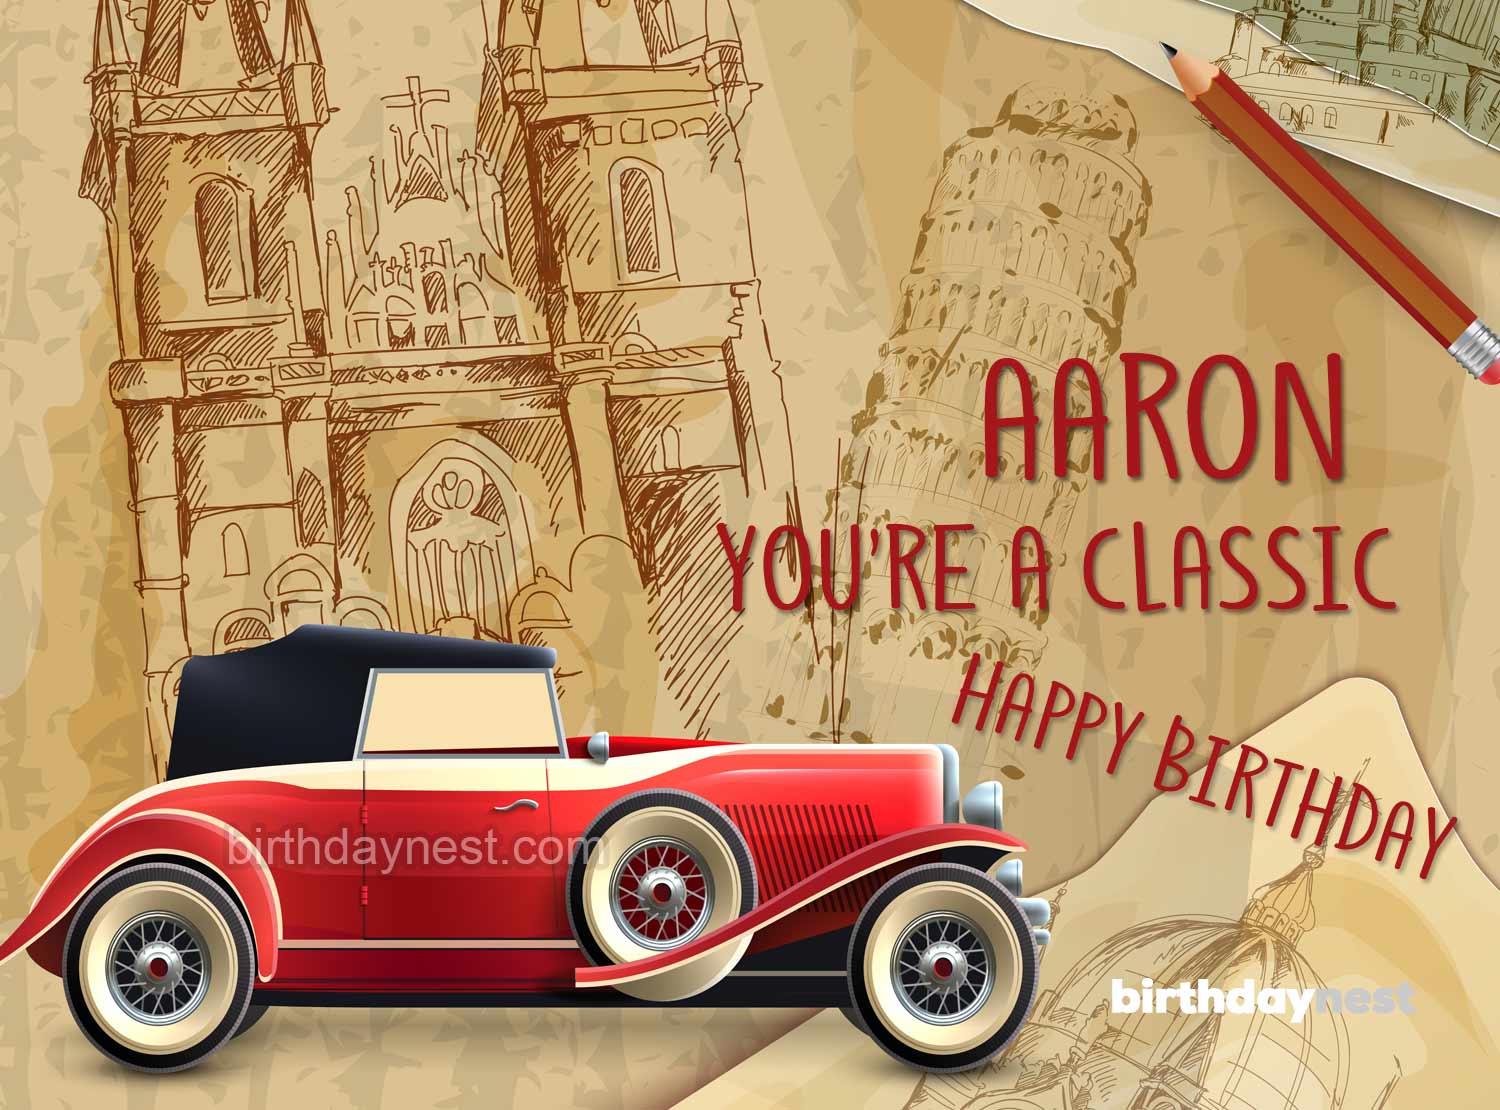 Aaron birthday card